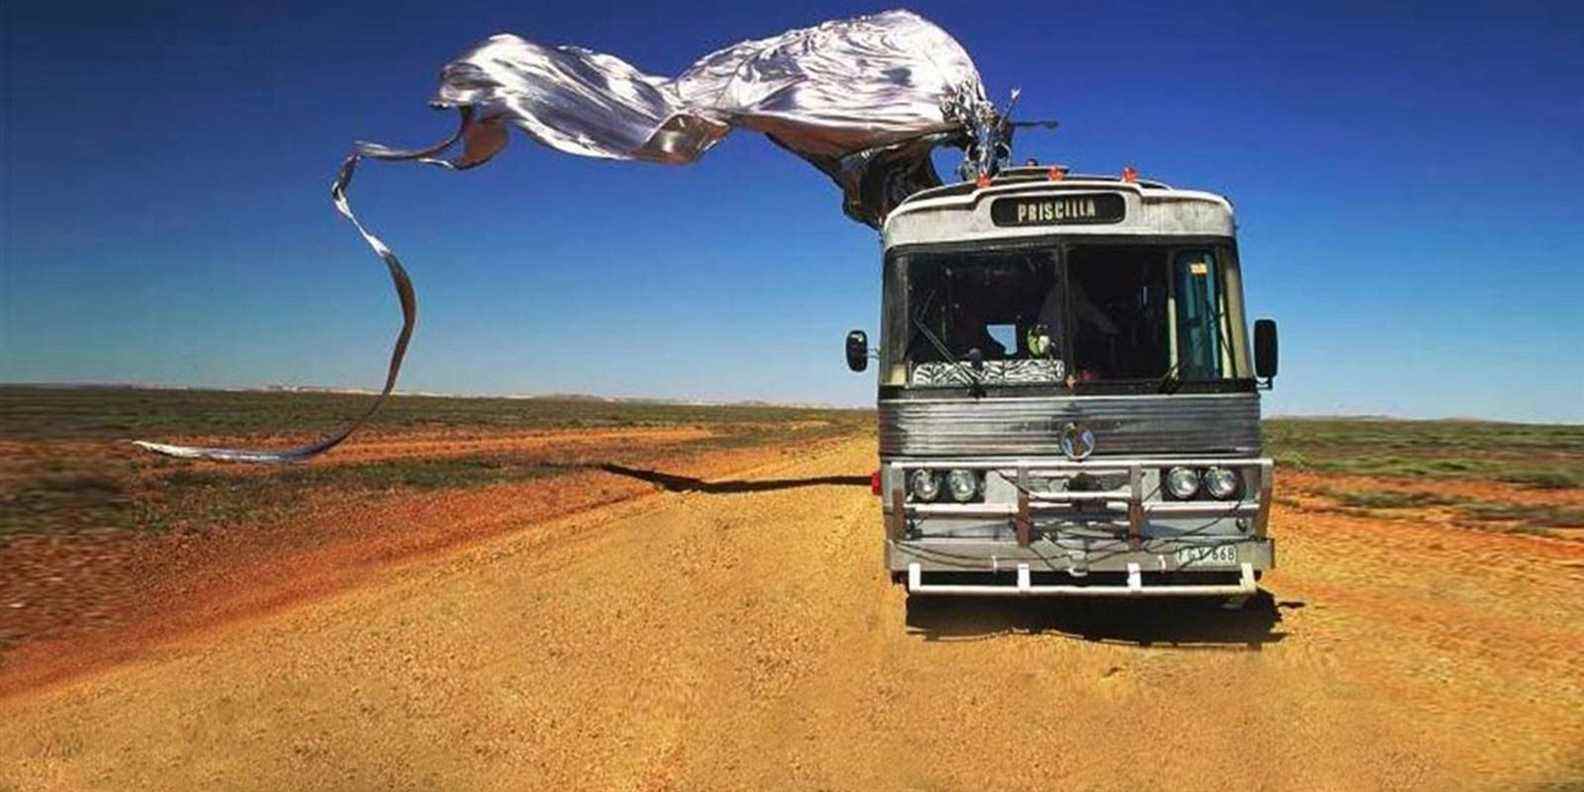 Les aventures de Priscilla, reine du bus photo promotionnelle du désert dans le désert avec une bannière argentée sur le dessus